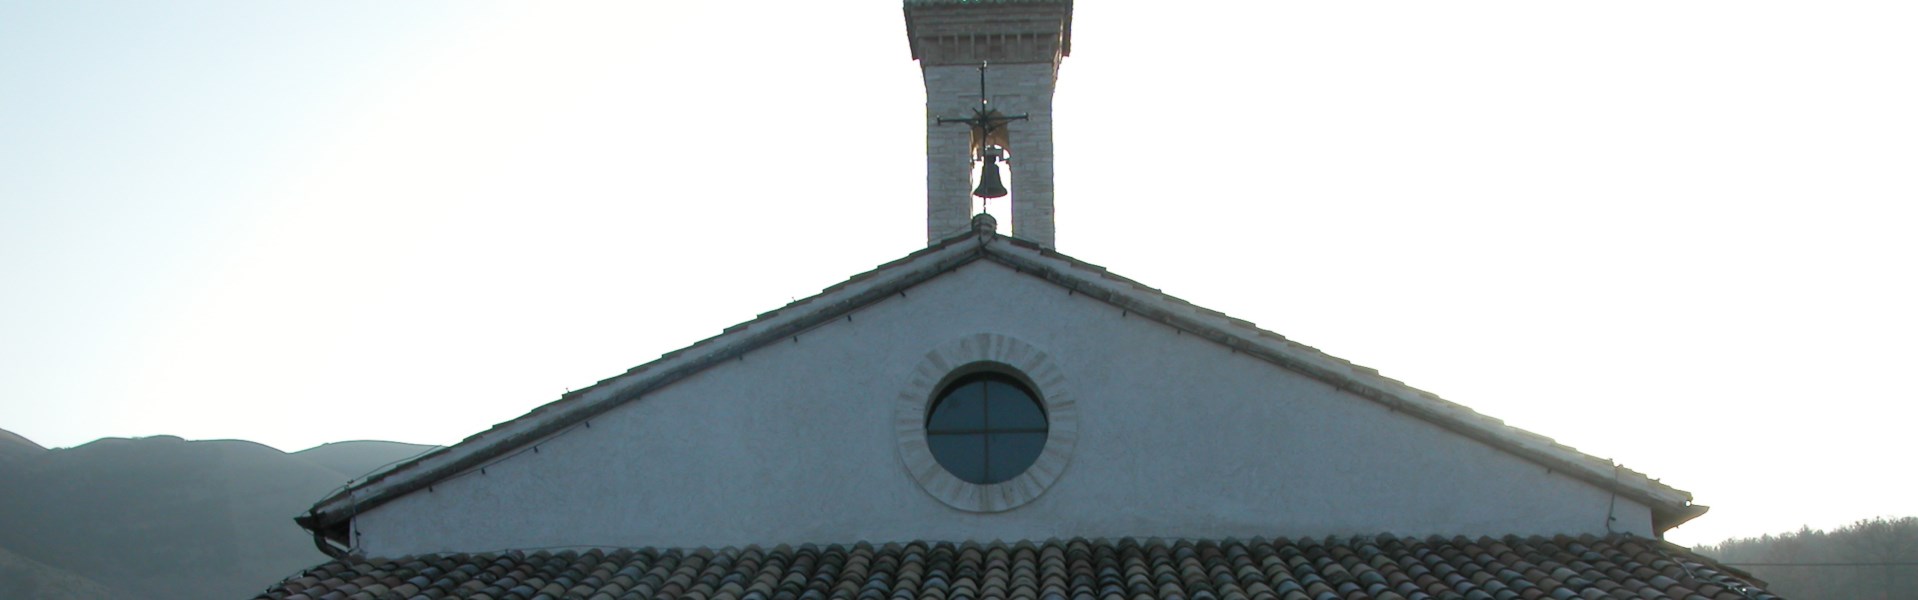 Serravalle del Chienti - Santuario della Madonna del Piano